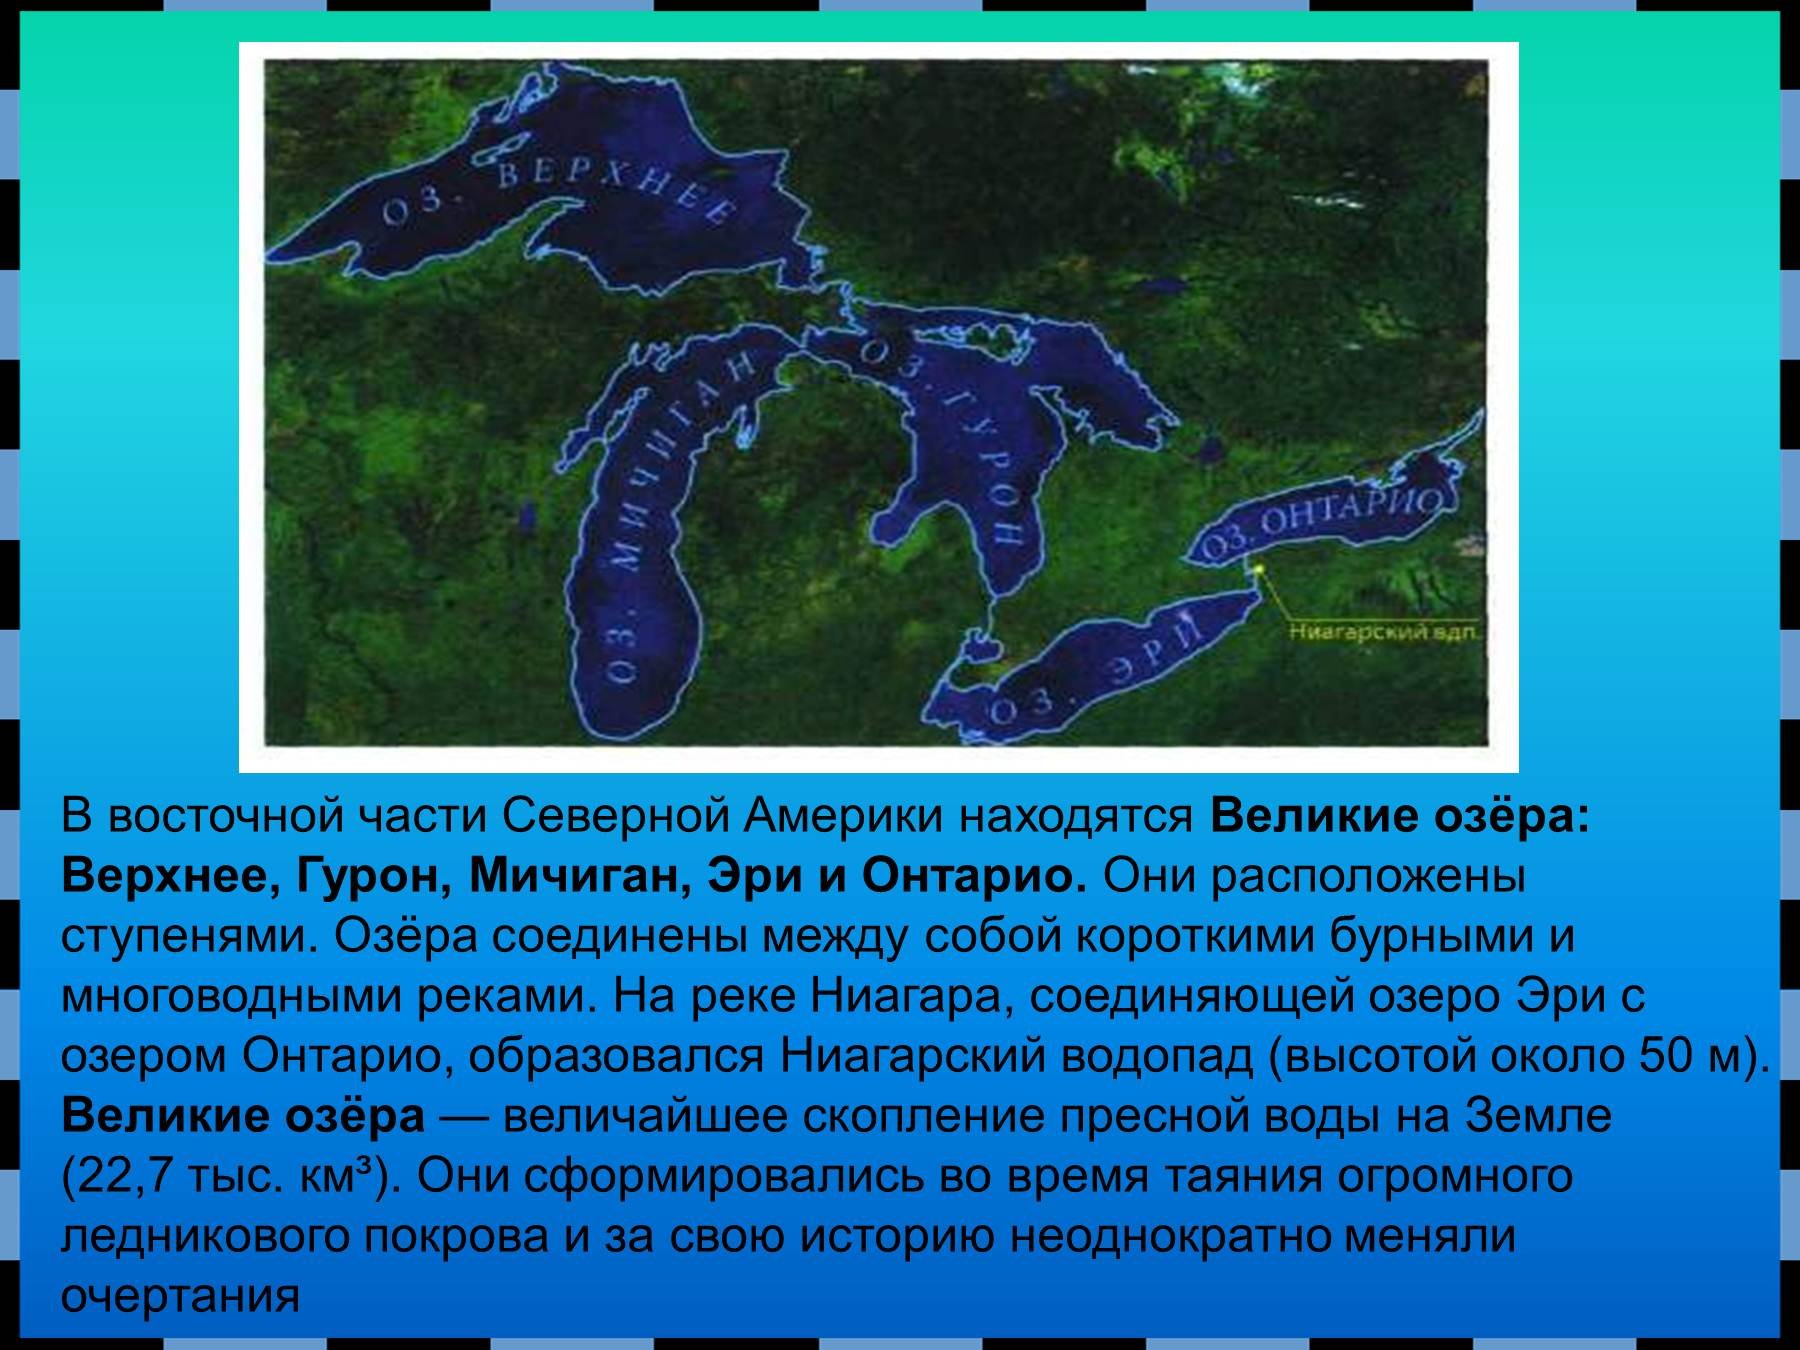 Какое происхождение крупных озер северной америки. Великие озера верхнее озеро Гурон Мичиган Эри и Онтарио. Озеро Гурон Северная Америка. Озера: Великие озера (верхнее Гурон Мичиган Эри Онтарио) на карте. Озеро верхнее Гурон Мичиган Эри.